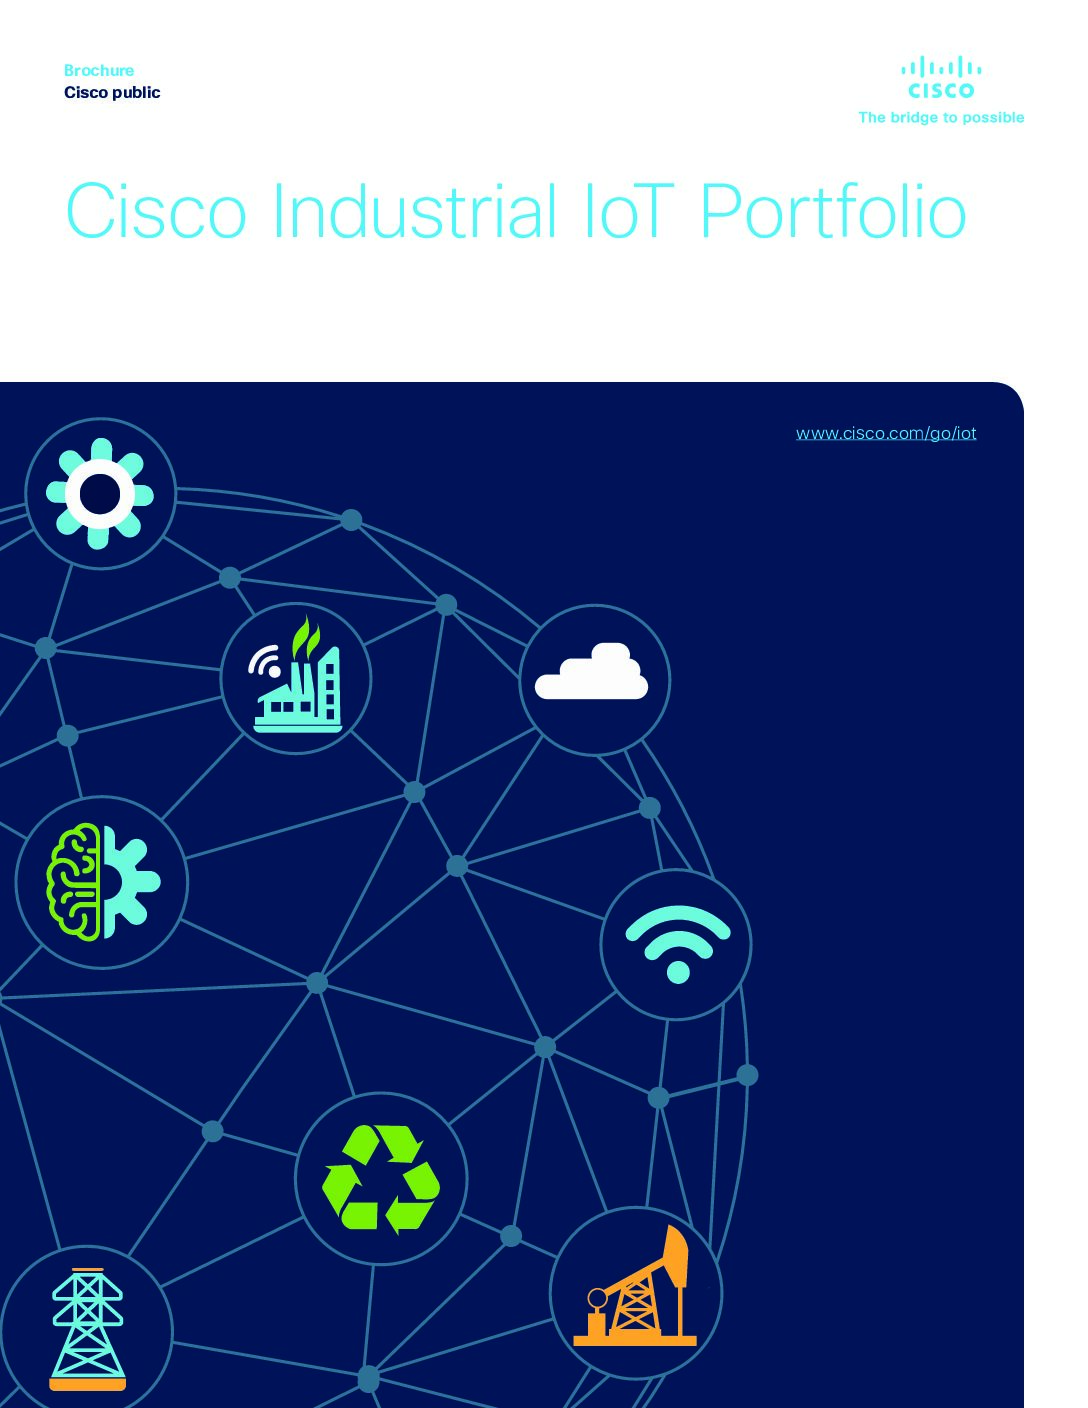 Cisco Industrial IoT Portfolio